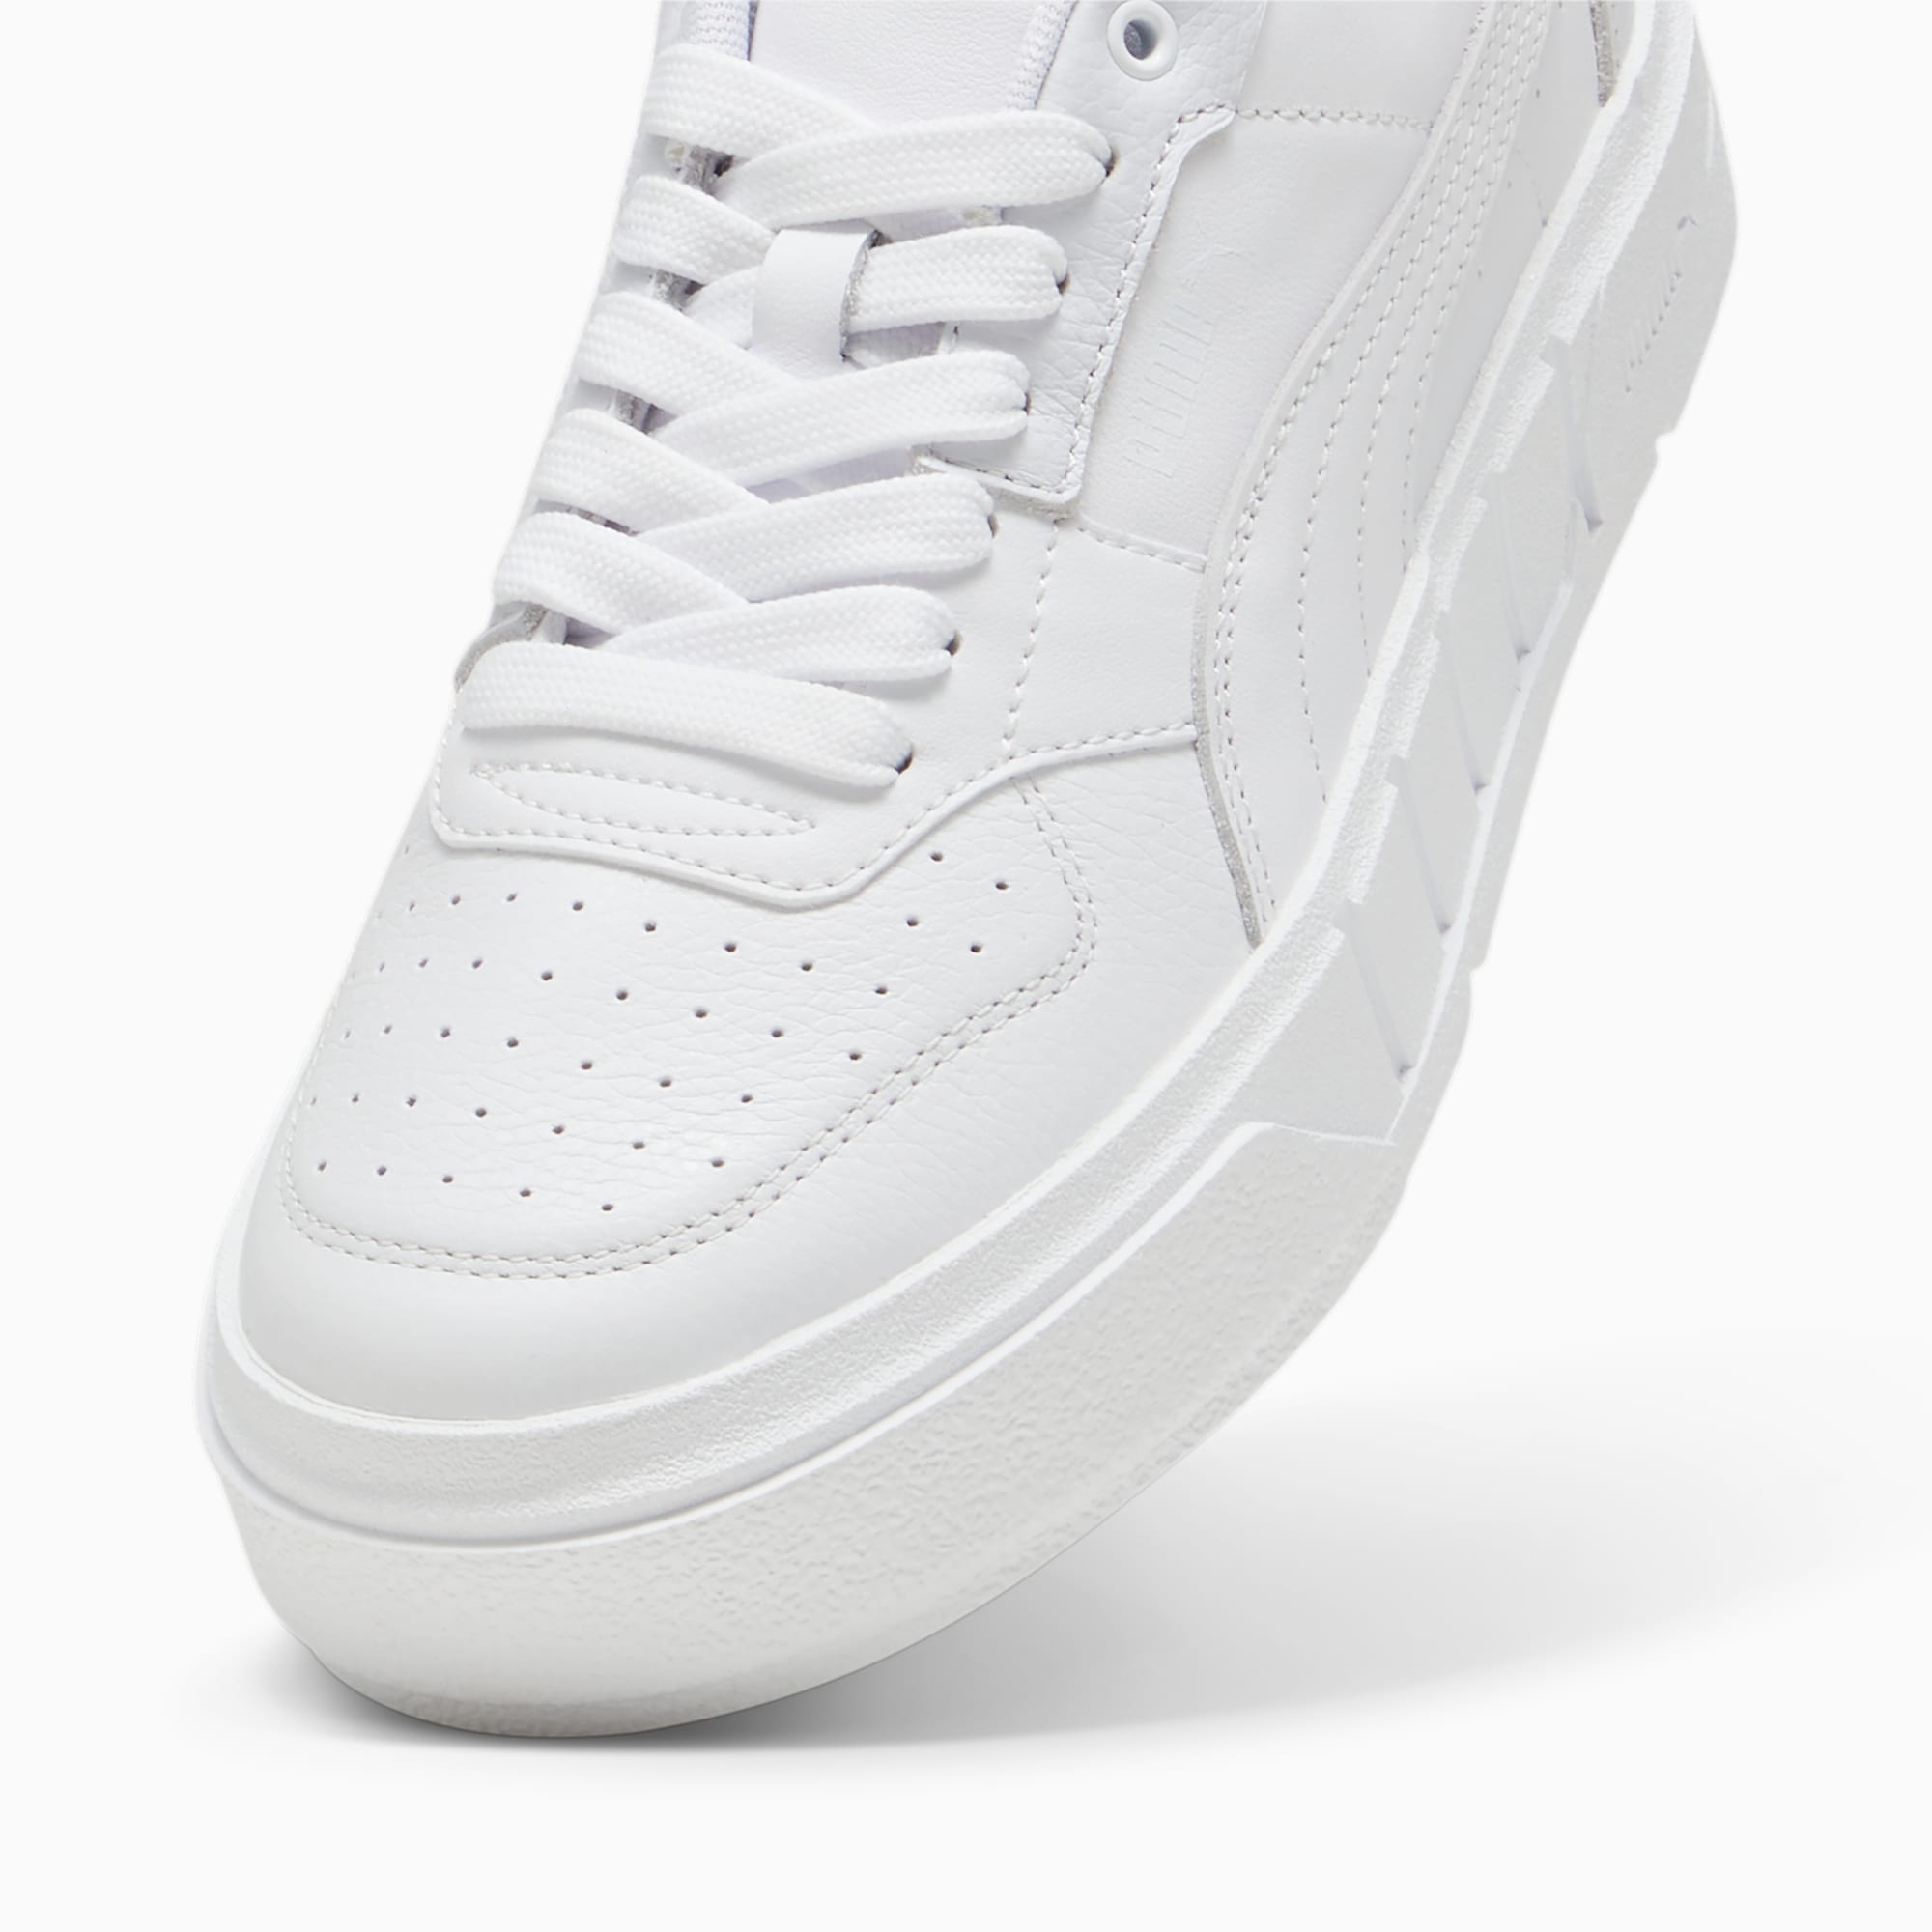 PUMA Cali Court Leather Damskie Sneakersy, Biały